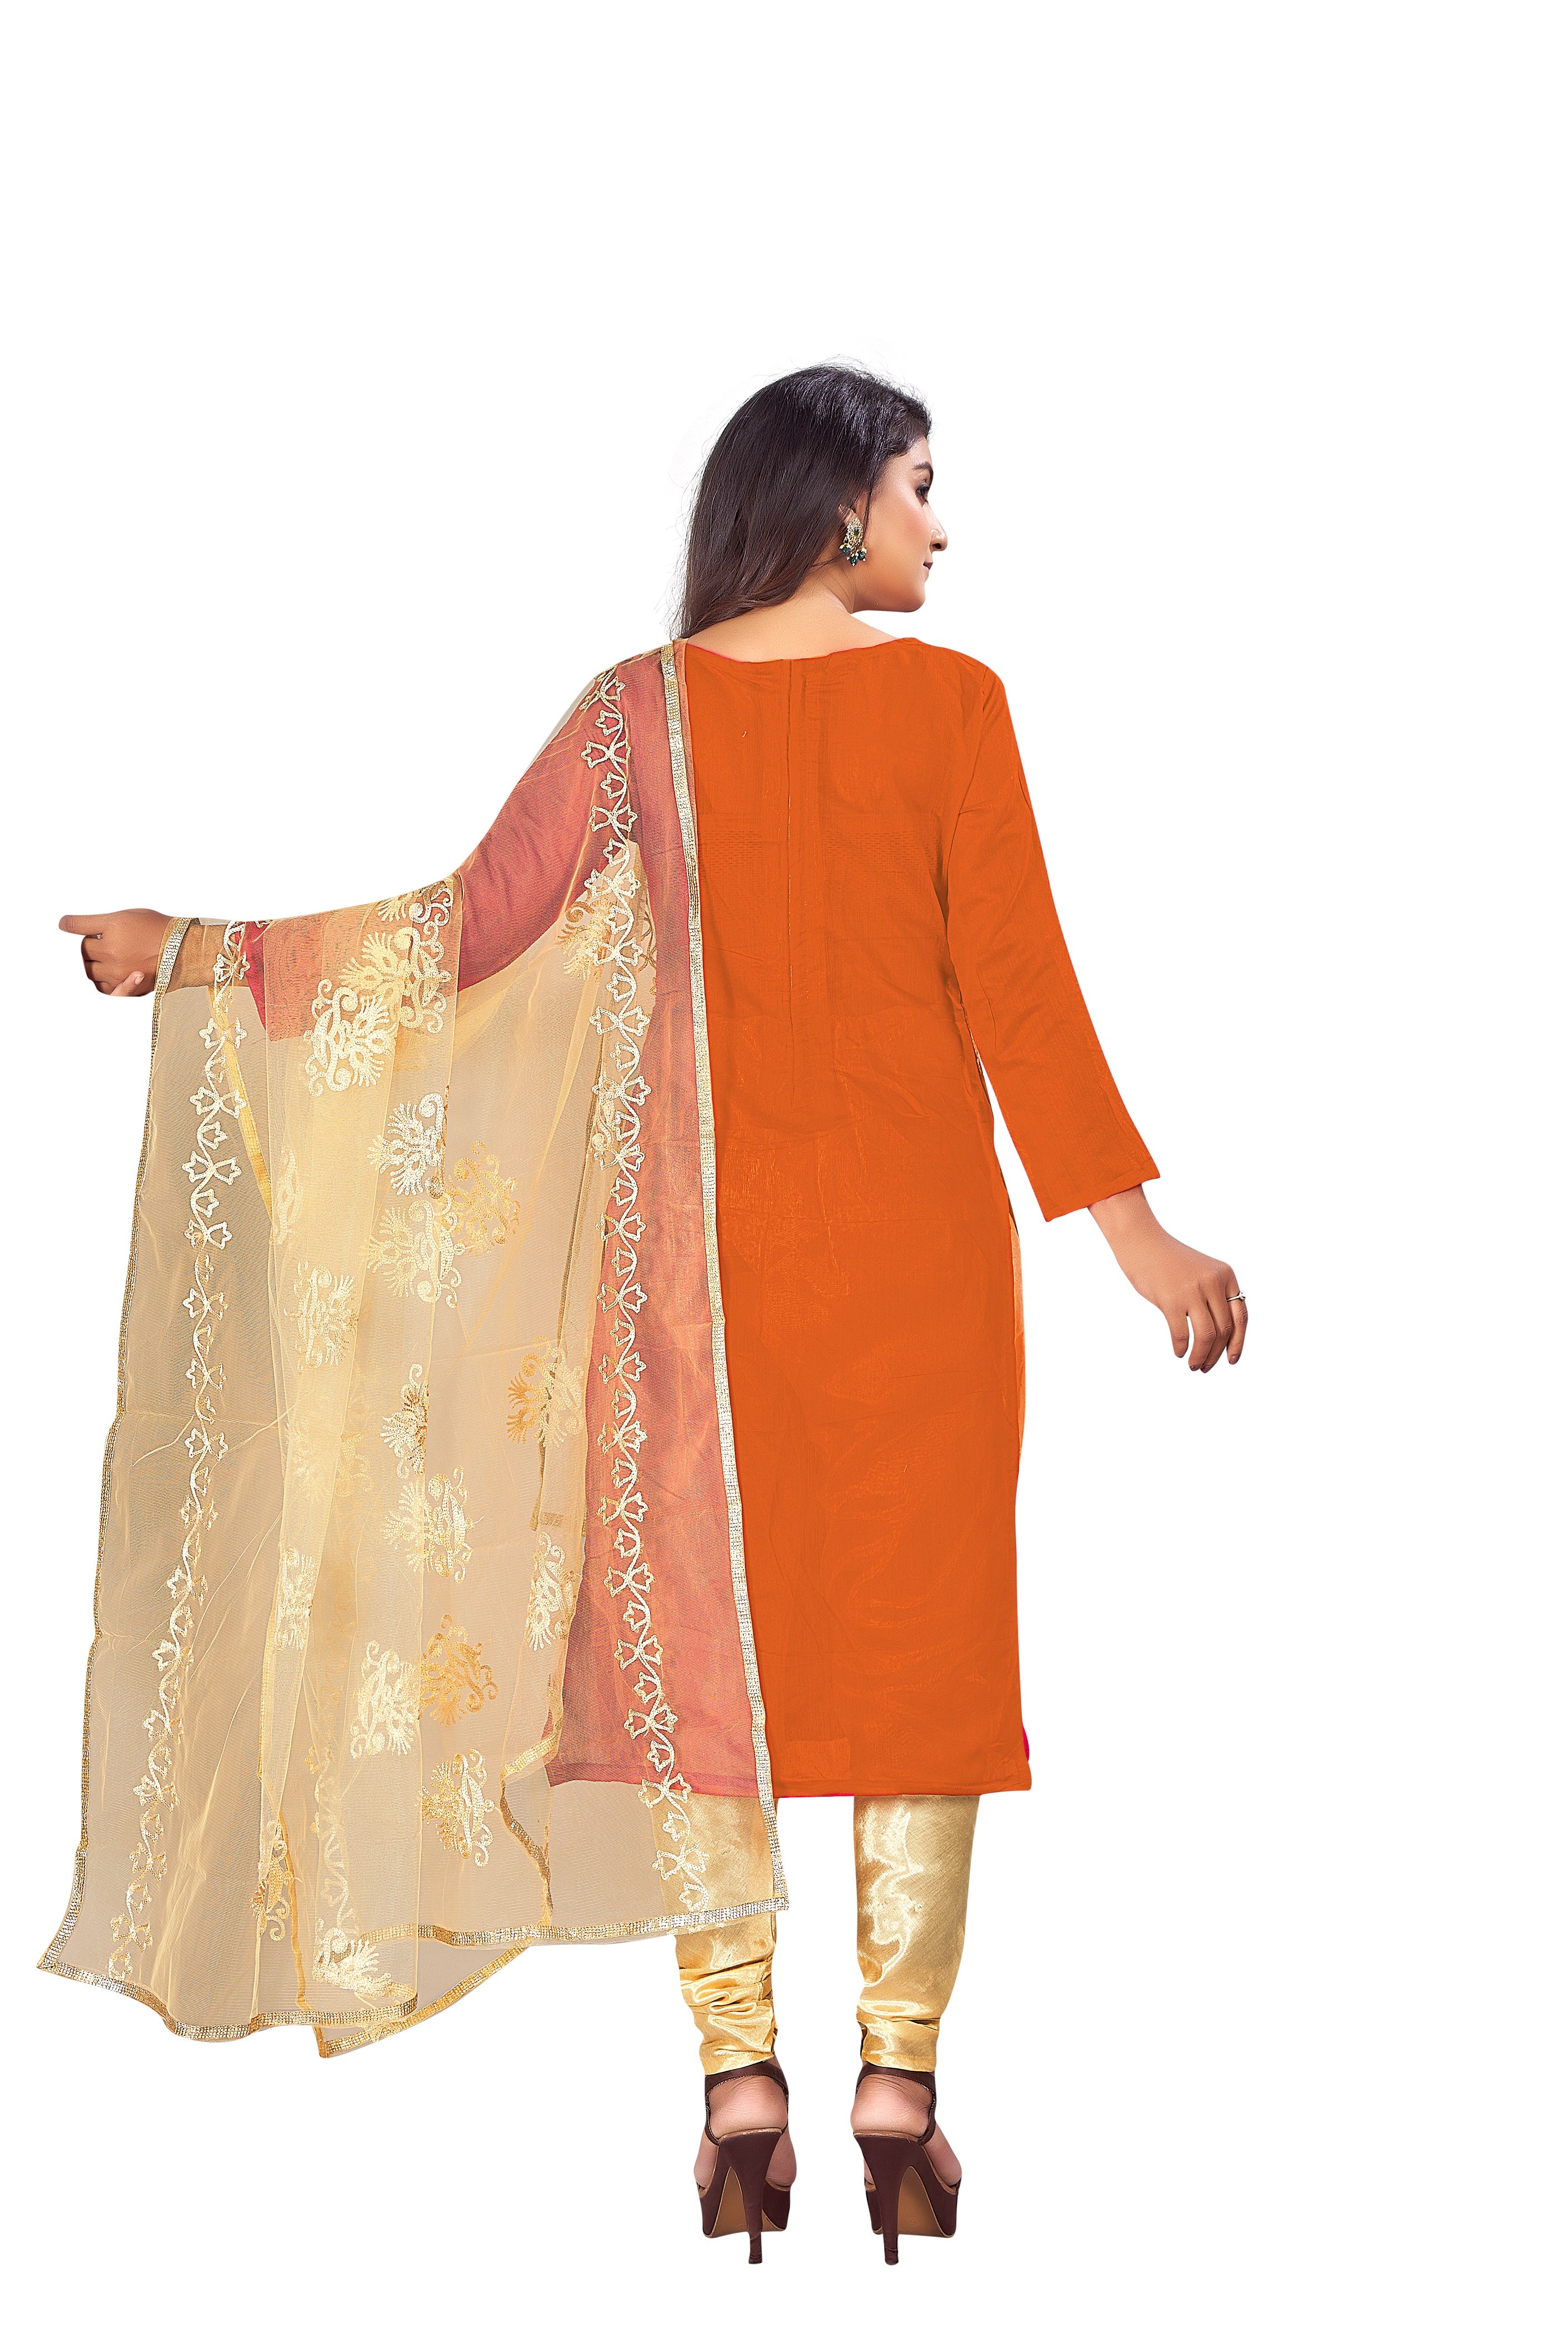 Women's Orange Colour Semi-Stitched Suit Sets - Dwija Fashion